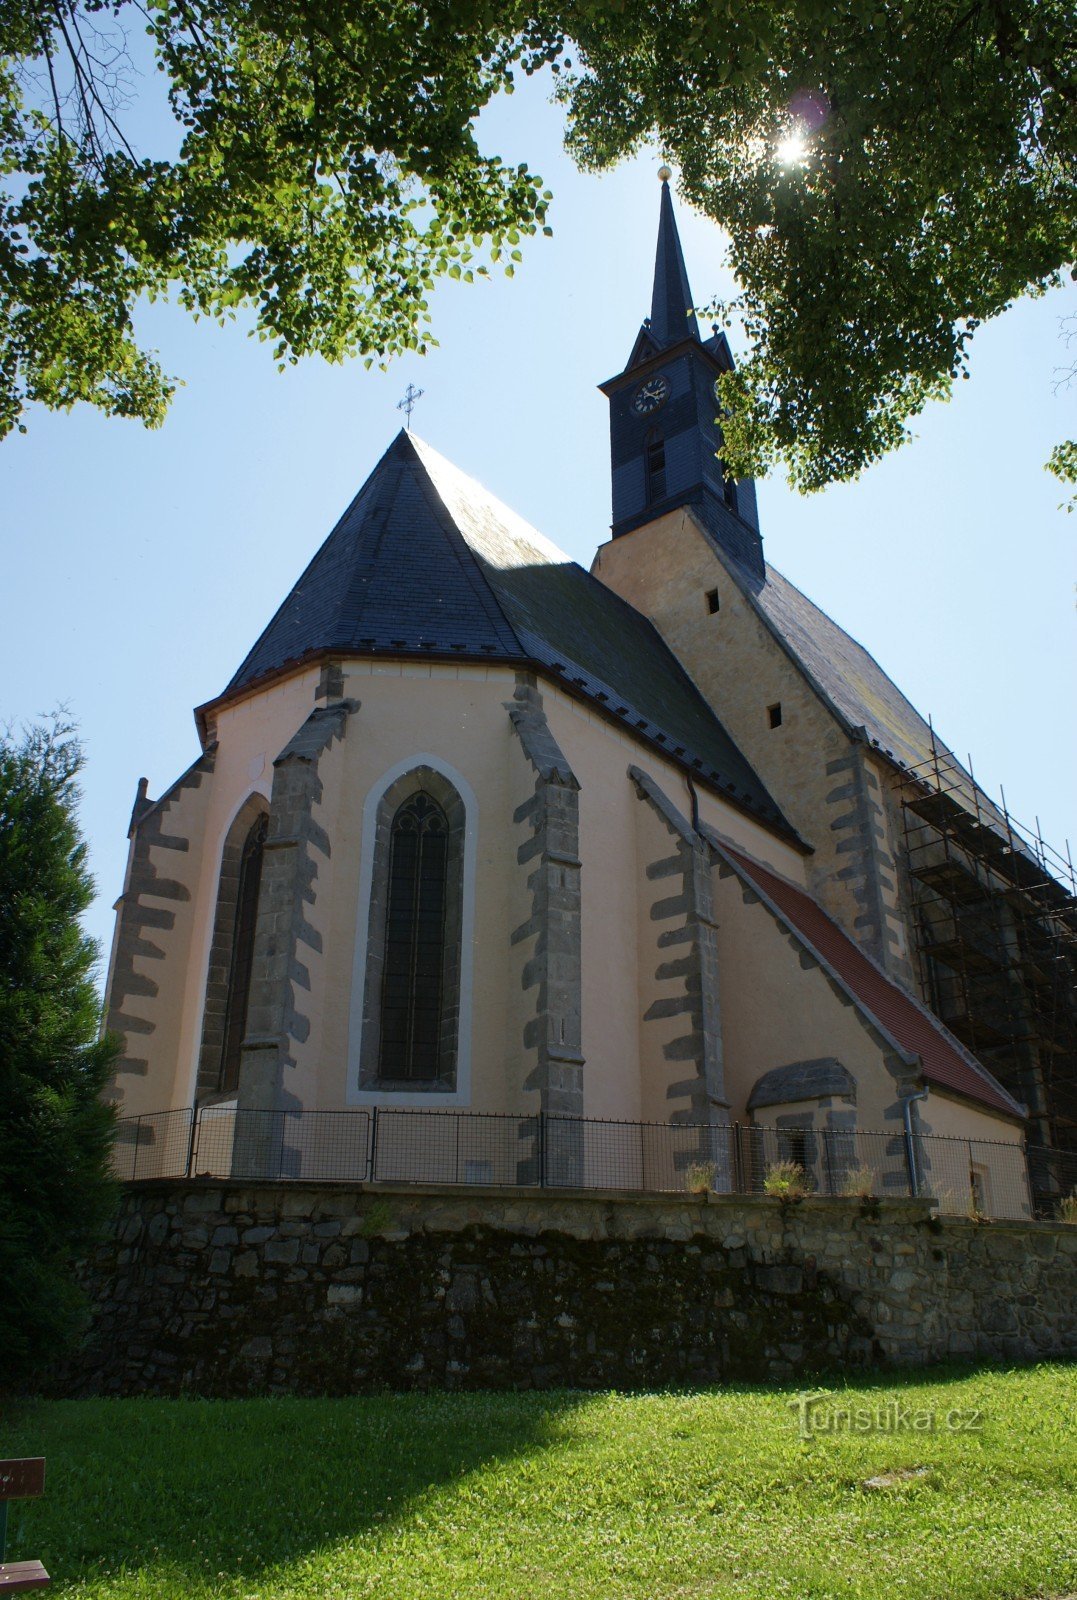 Dolní Dvořiště - nhà thờ St. Hoa loa kèn